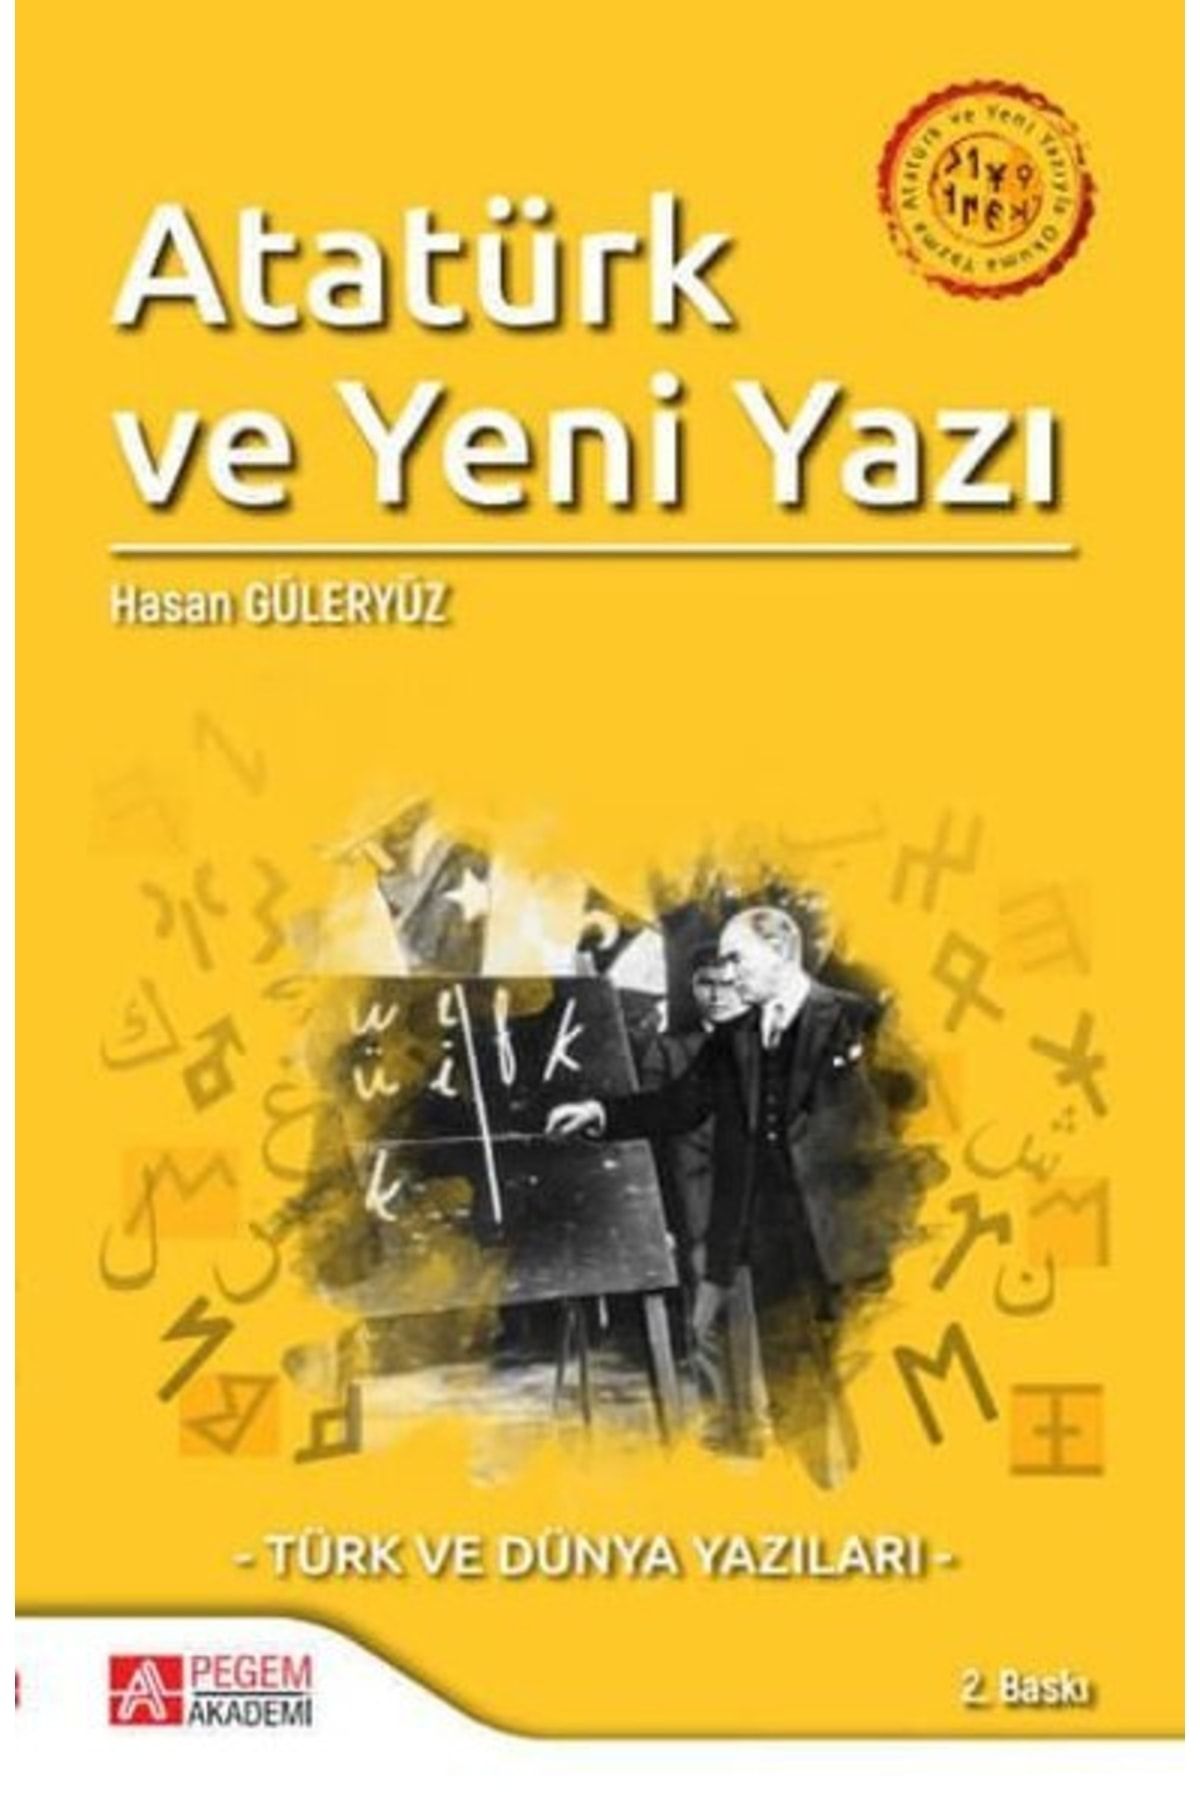 Pegem Akademi Yayıncılık Atatürk Ve Yeni Yazıyla Okuma Yazma